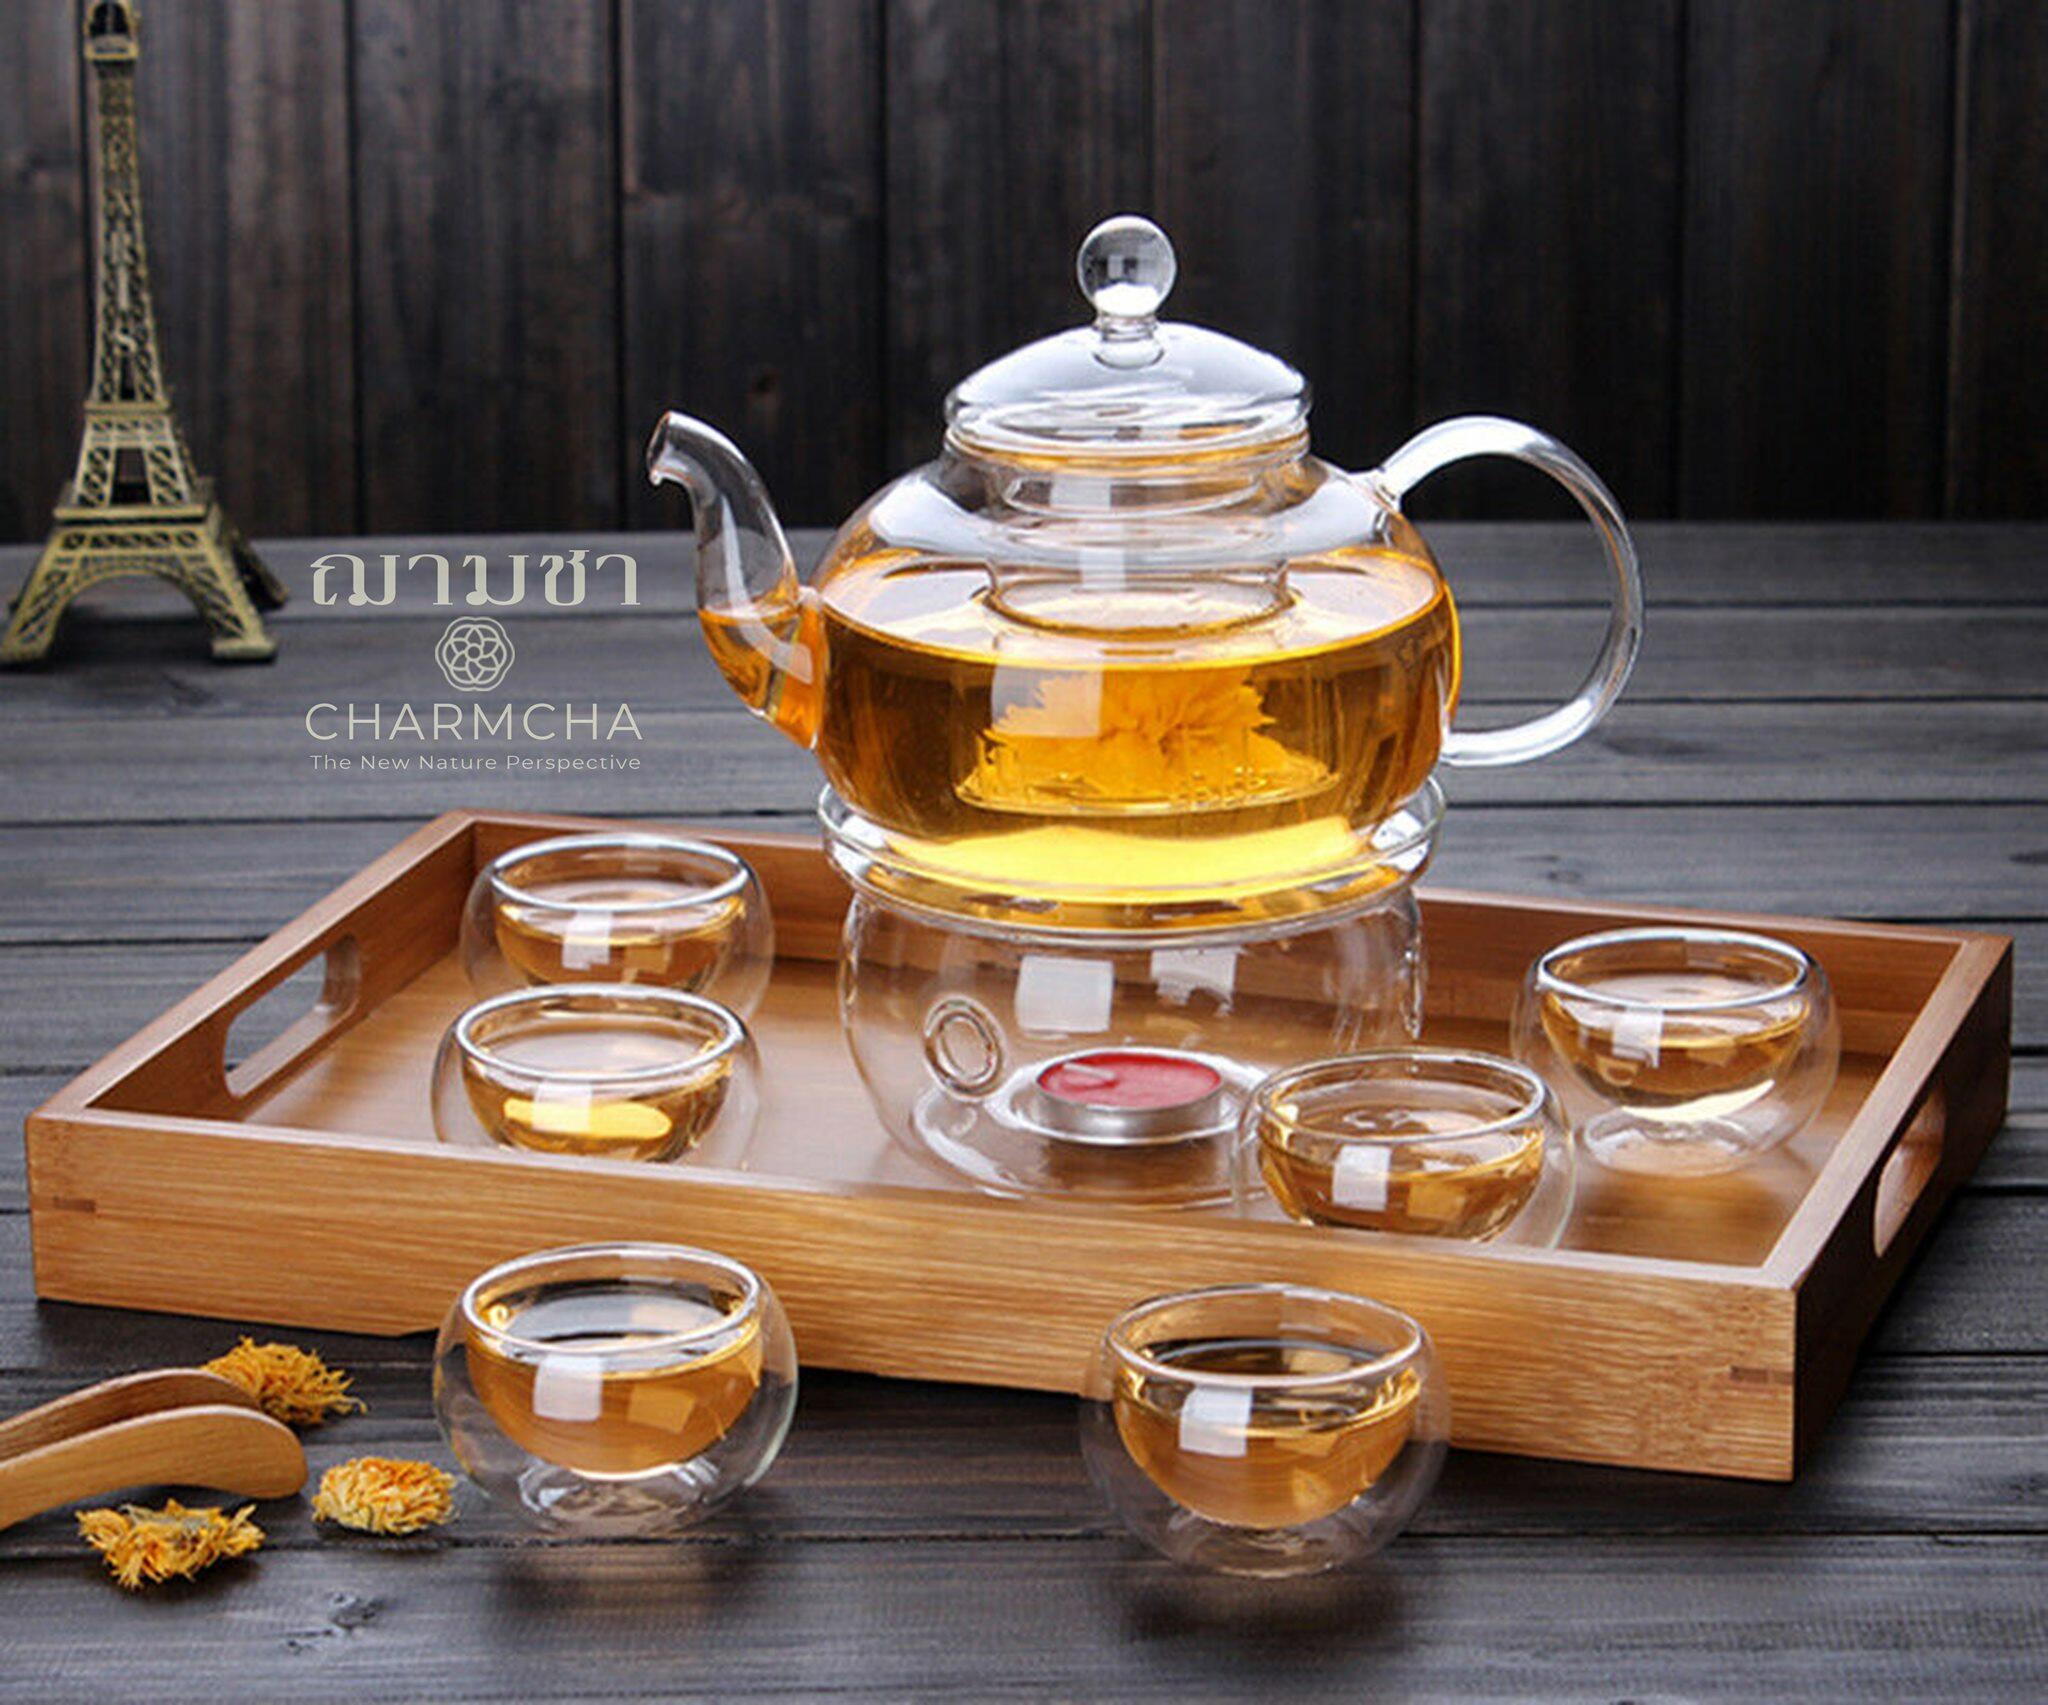 ชุดกาน้ำชา800ml 1ชุด มีตัวเลือกแก้ว 2-6 ใบ+ที่กรองชา+เตาอุ่น+เทียน ครบชุด ทำจากแก้ววางบนเตาความร้อนได้ charmcha ฌามชา ชุดของขวัญ